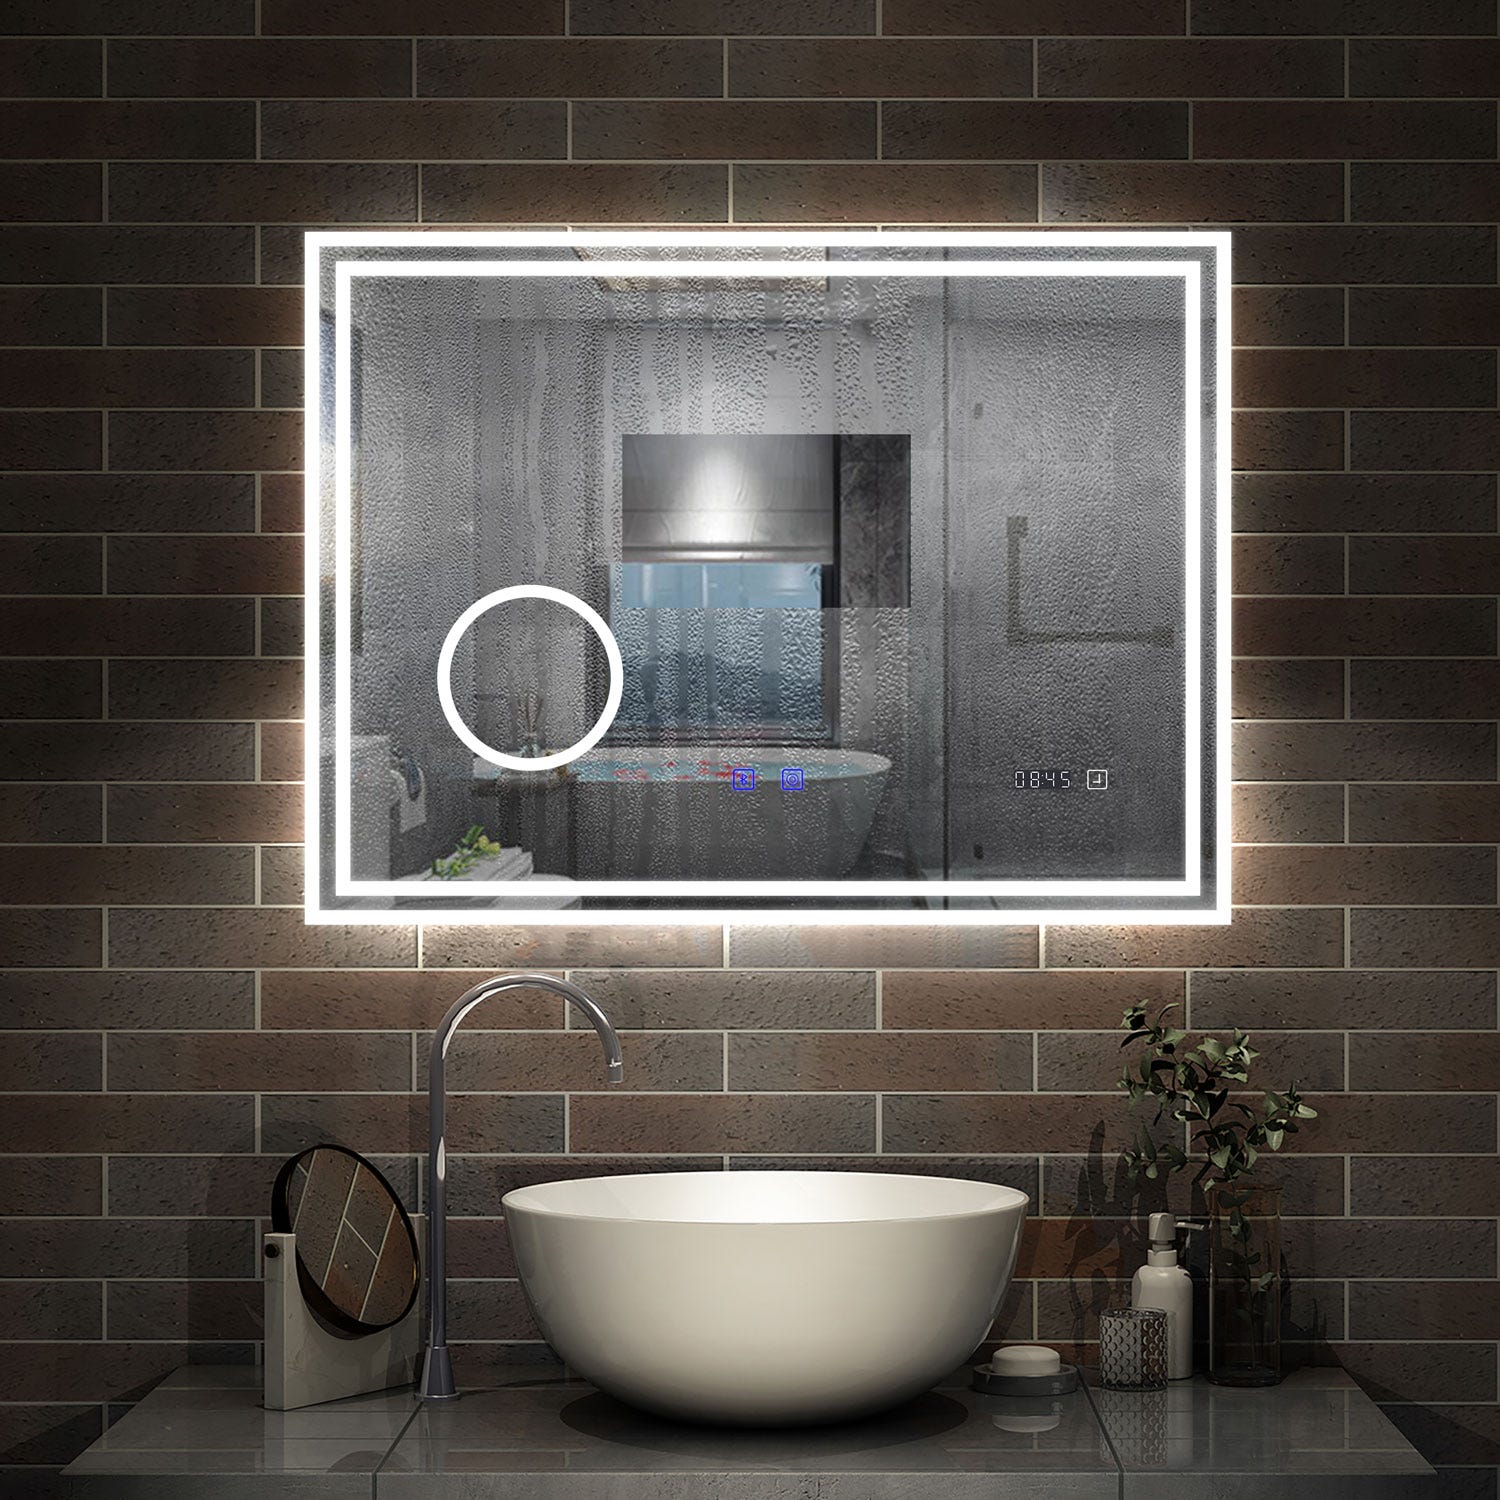 AICA LED miroir 120x70cm horloge + bluetooth + miroir grossissant + tricolore + tactile + anti-buée, suspendu horizontalement ,miroir salle de bain 2